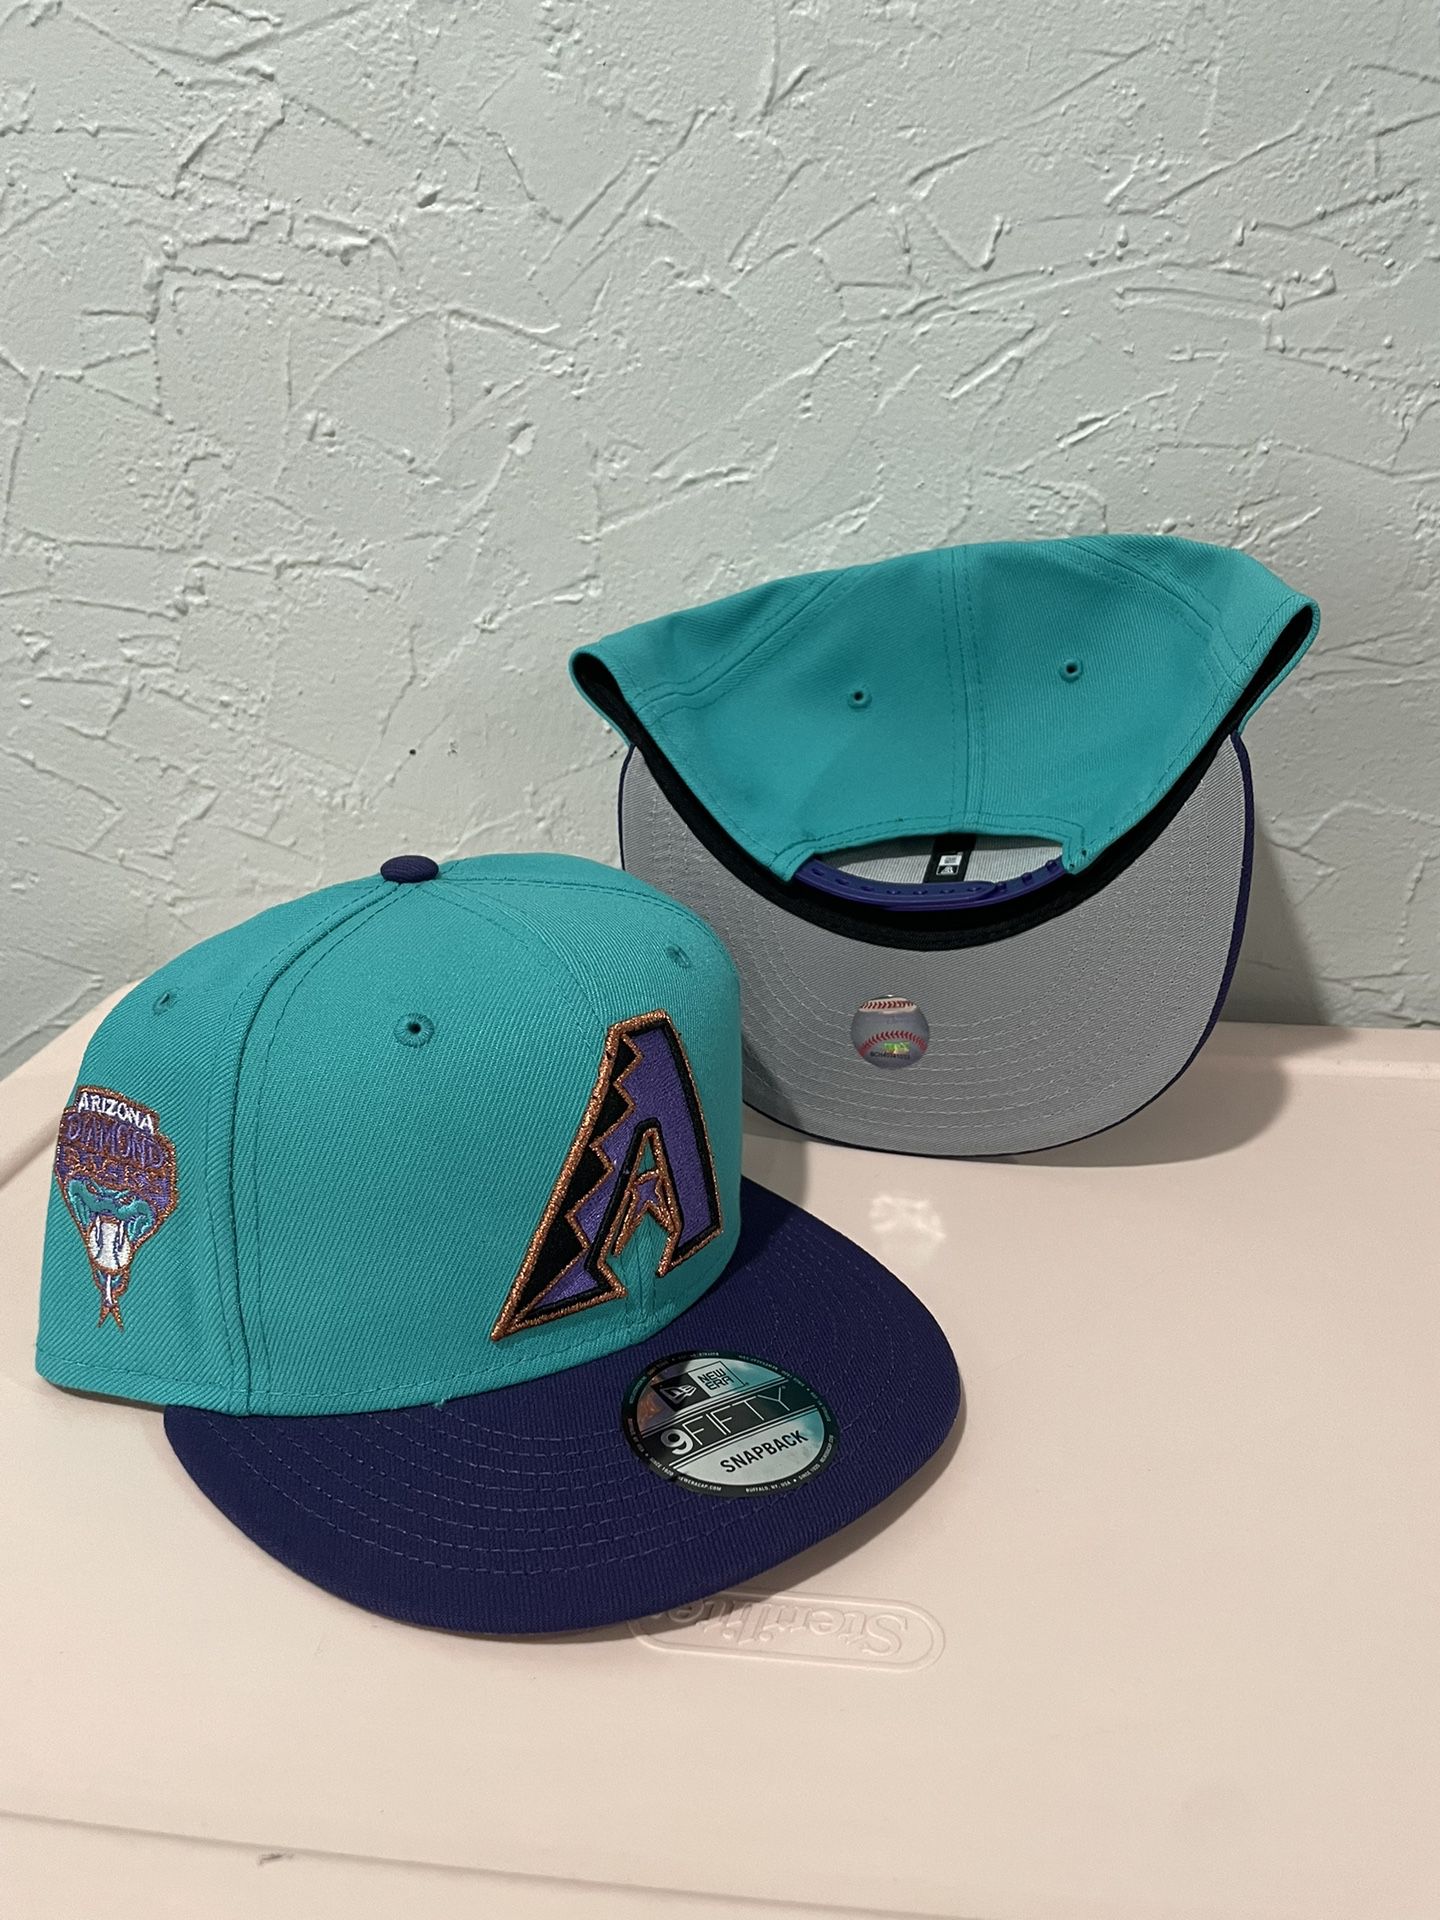 MLB New Era Arizona Diamondback’s 9fifty SnapBack Hats for Sale in City ...